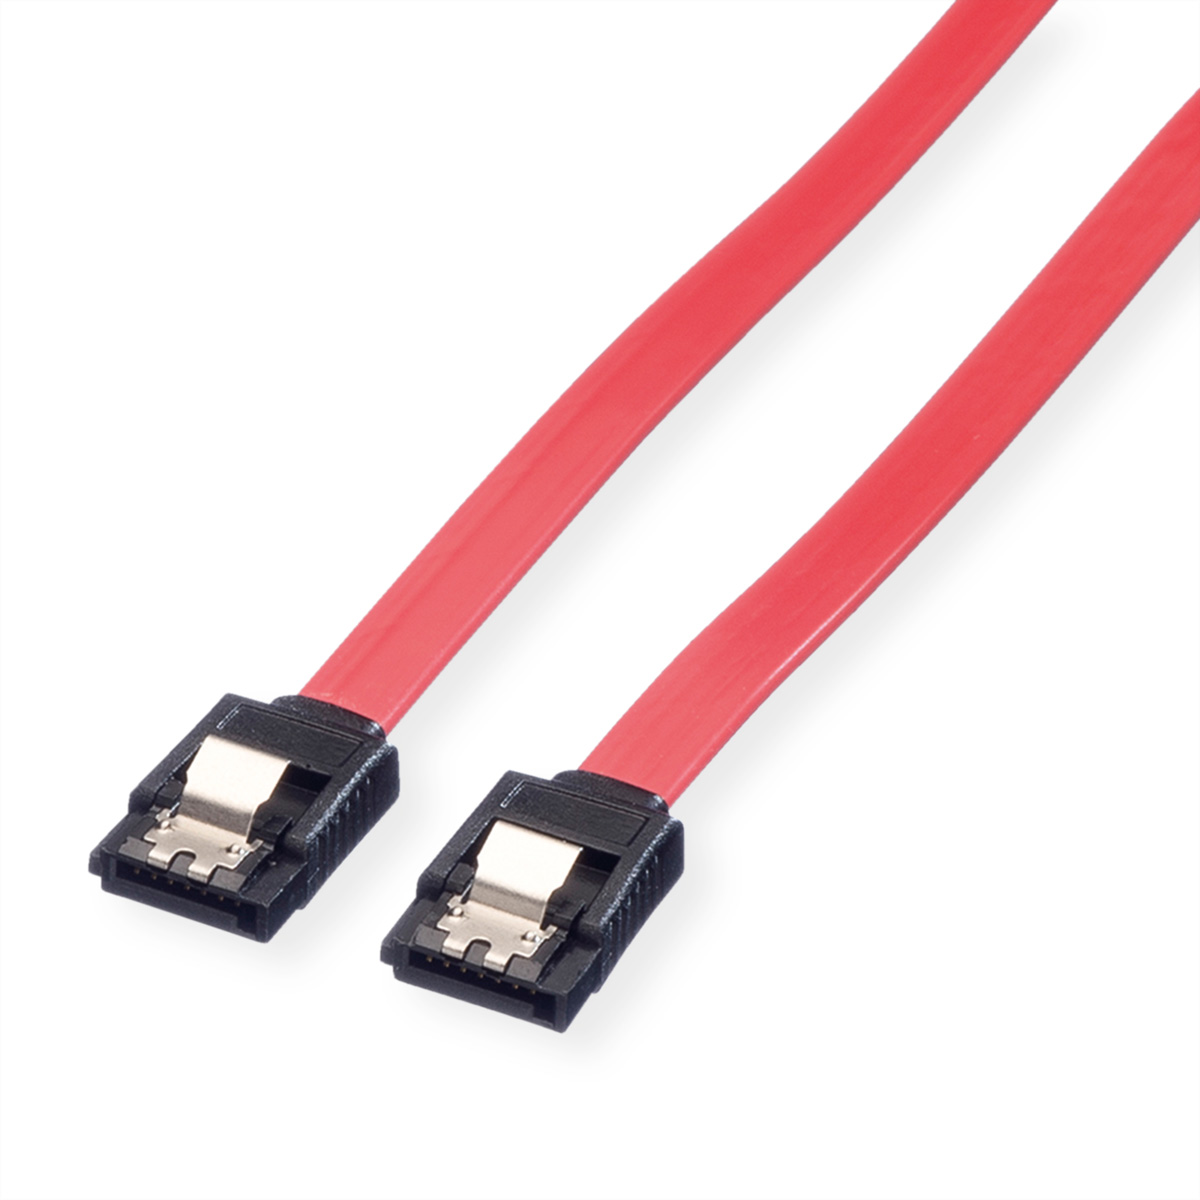 ROLINE Int. SATA 3.0 Gbit/s HDD-Kabel mit Schnappverschluss, 0,5 m